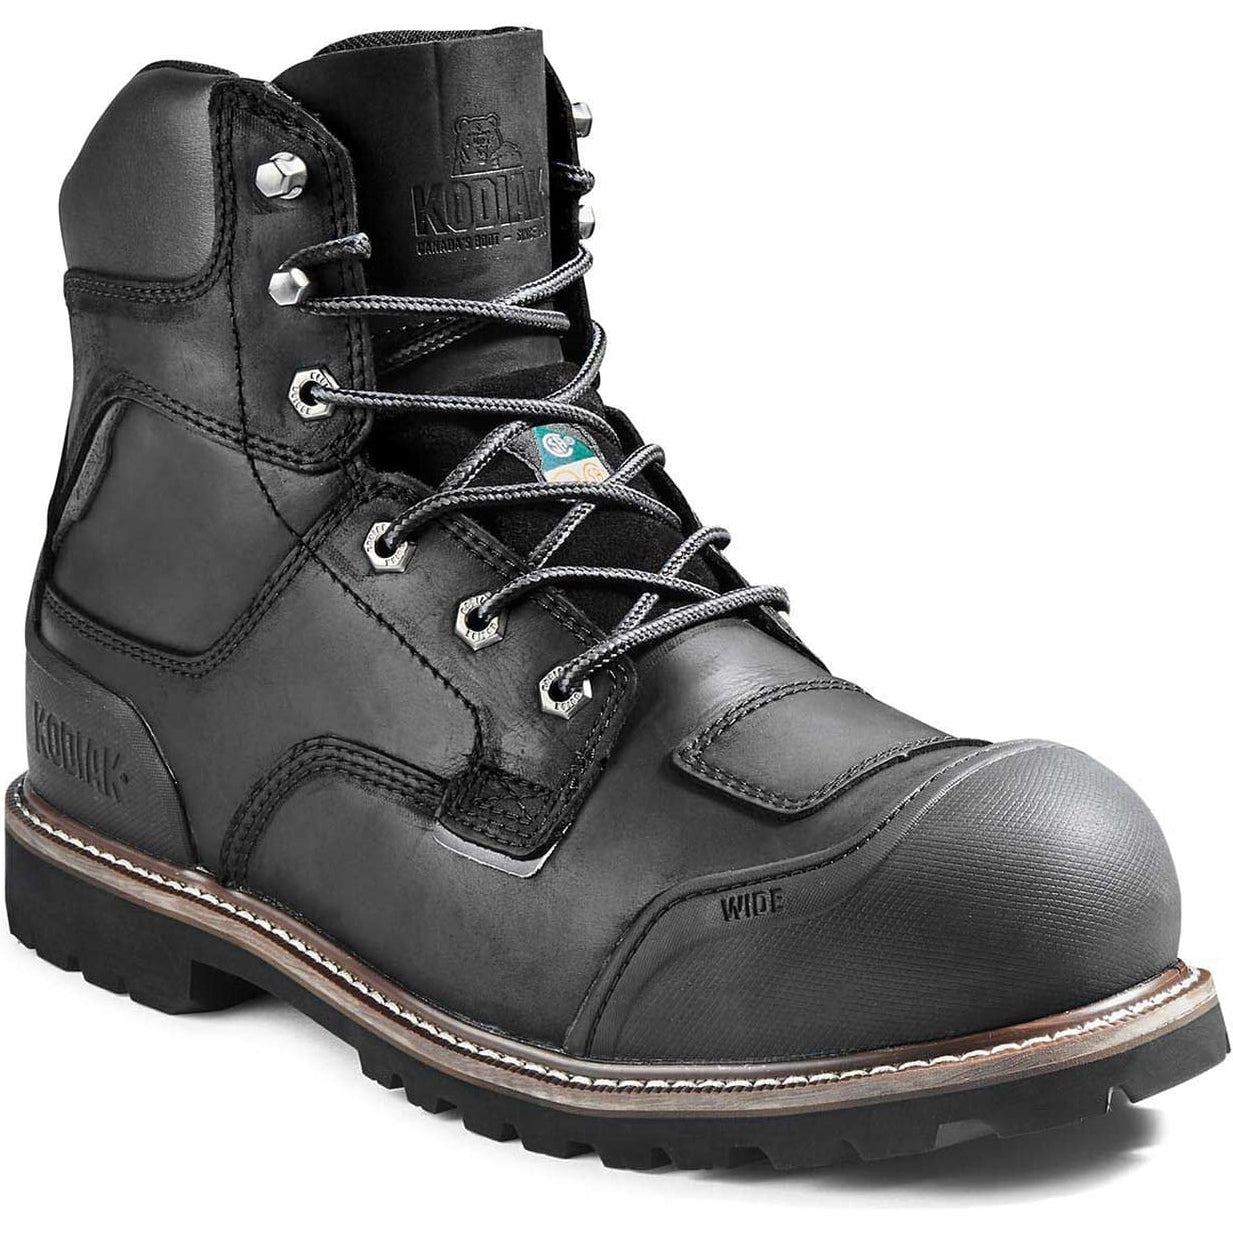 Kodiak Men's Generations Widebody 6" Comp Toe WP Work Boot -Black- 4TGBBK 8 / Extra Wide / Black - Overlook Boots